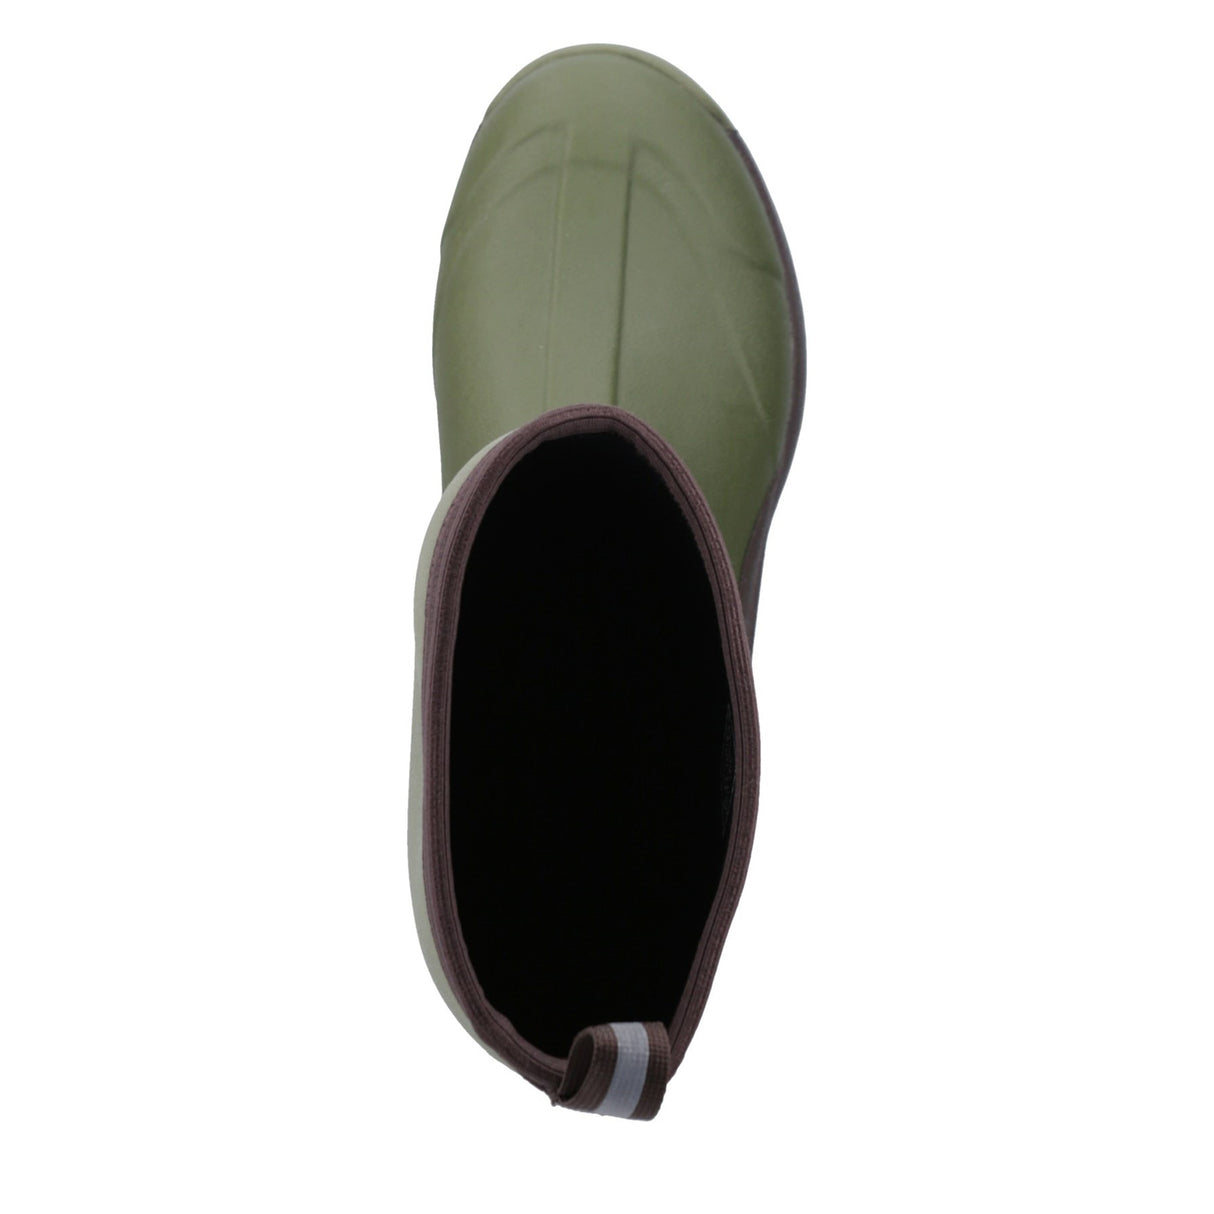 Unisex Calder Short Boots Olive